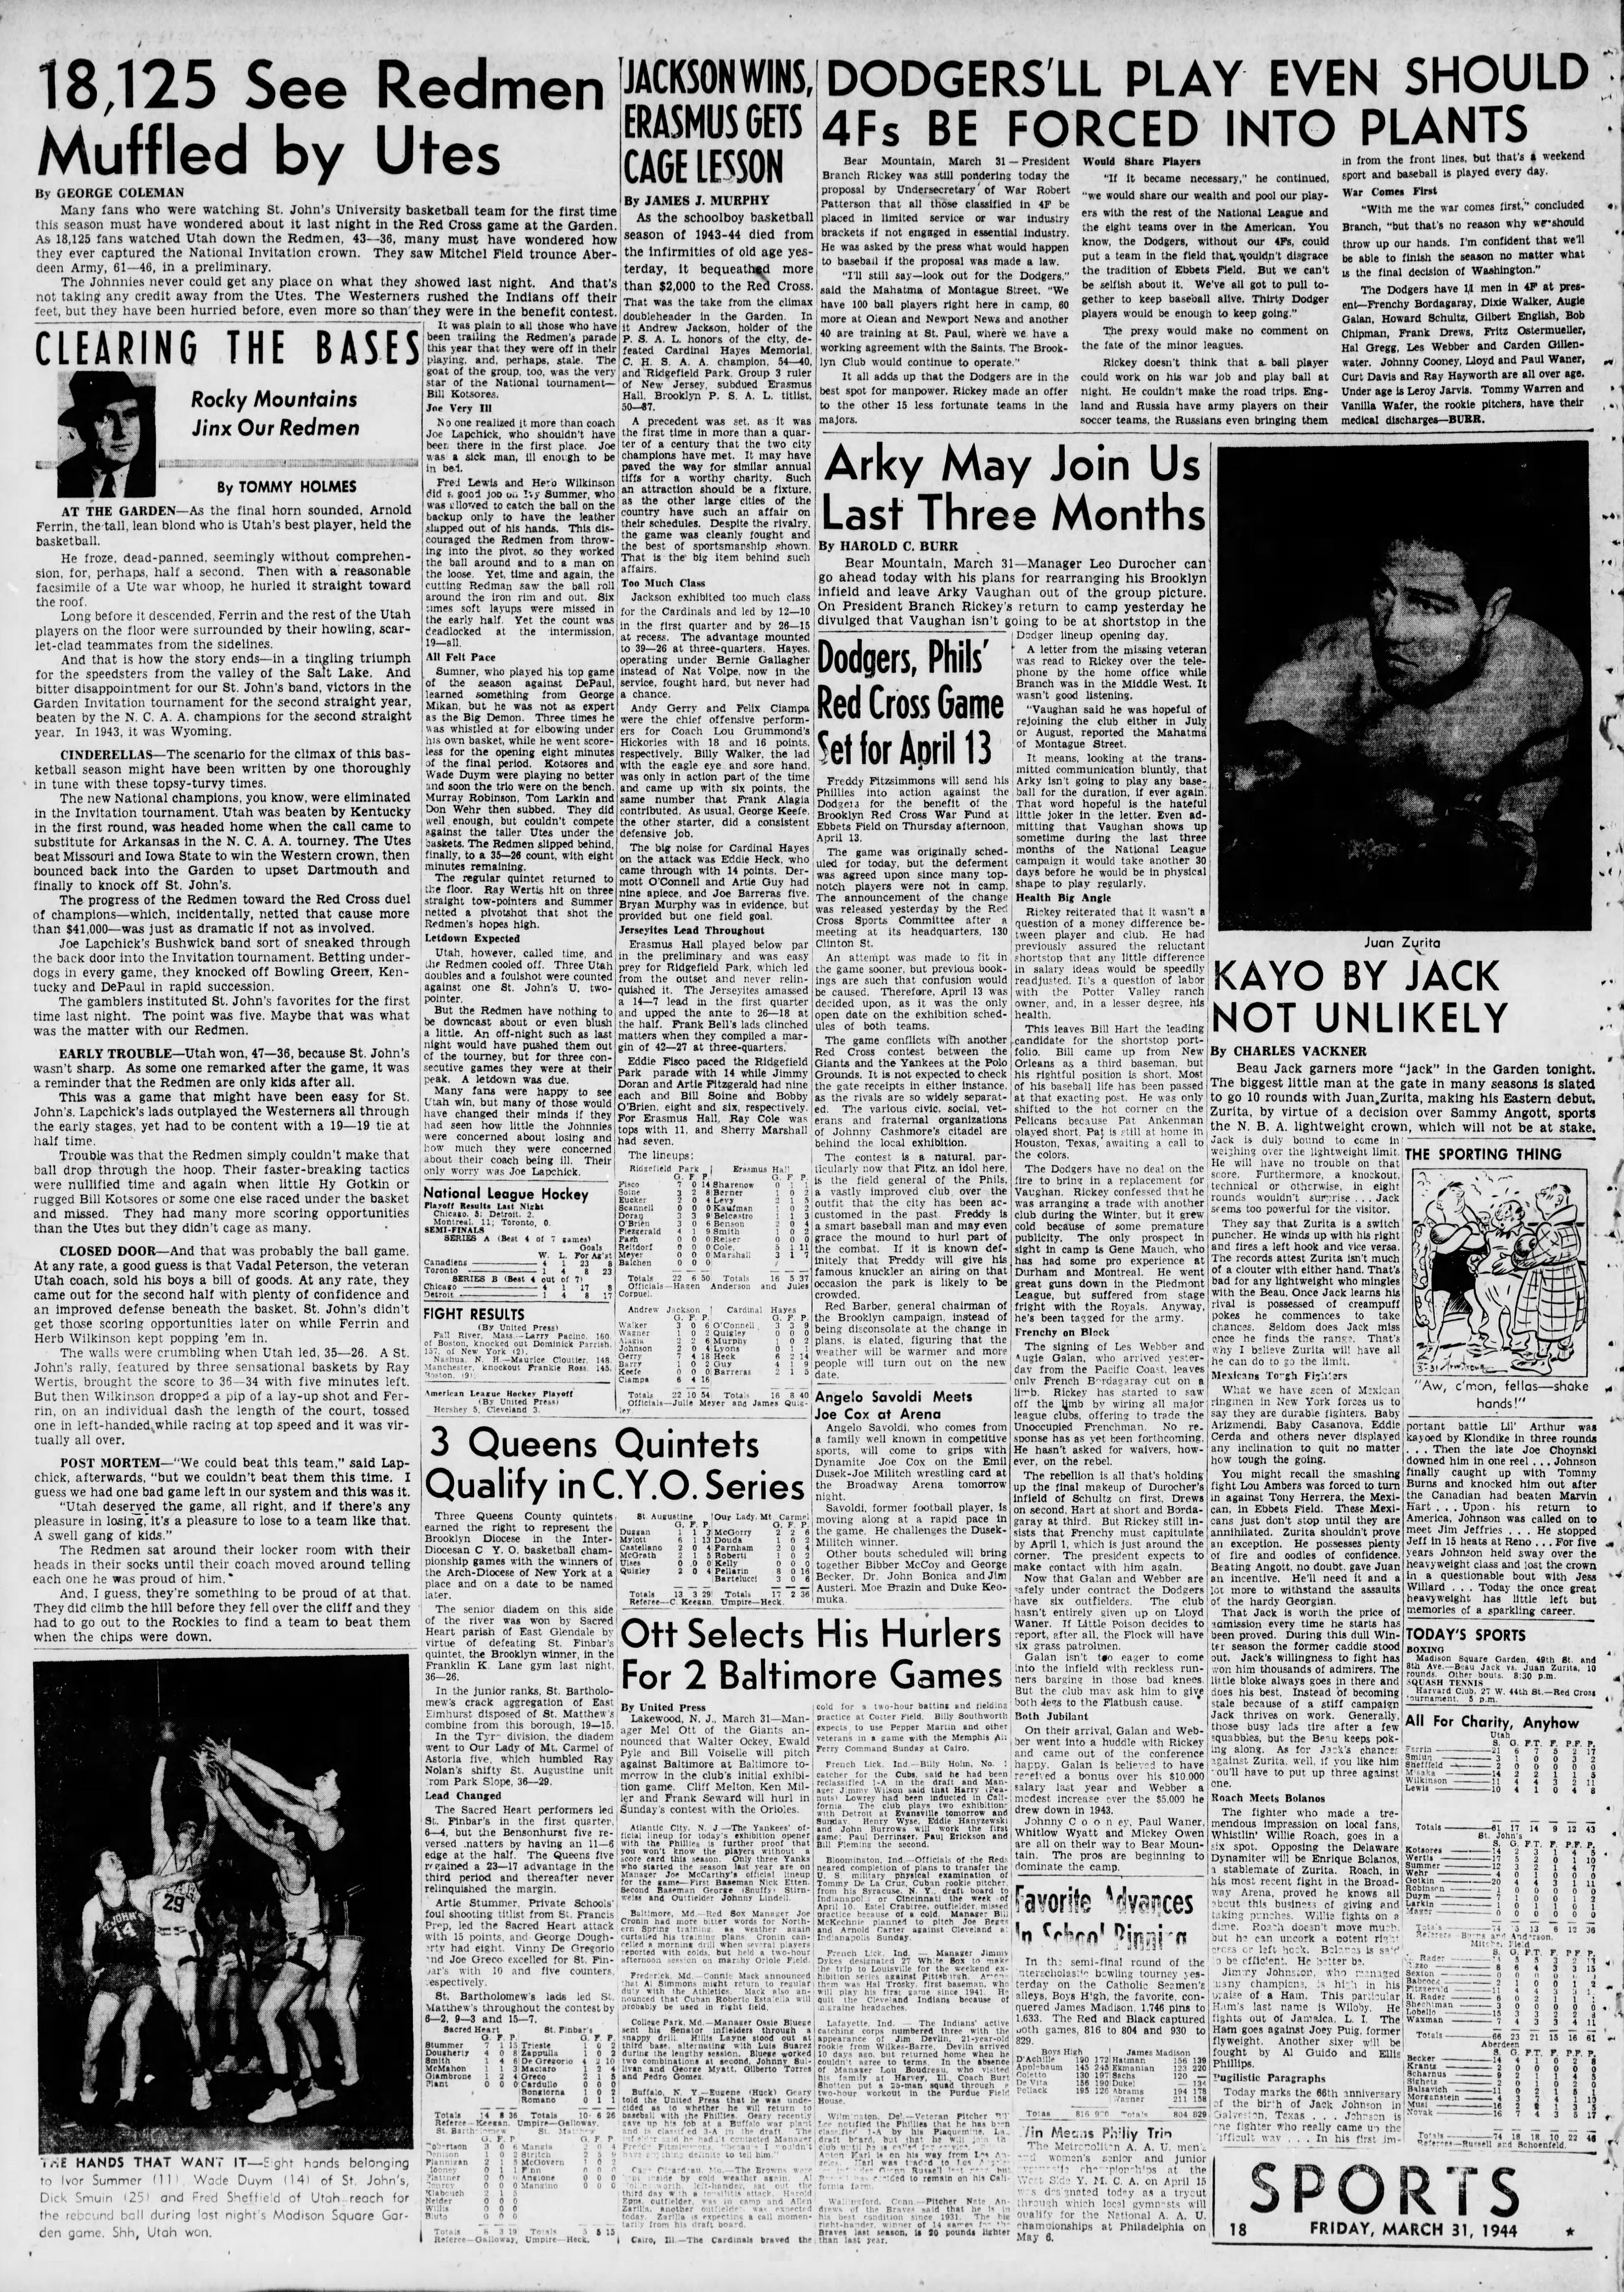 The_Brooklyn_Daily_Eagle_Fri__Mar_31__1944_(4).jpg